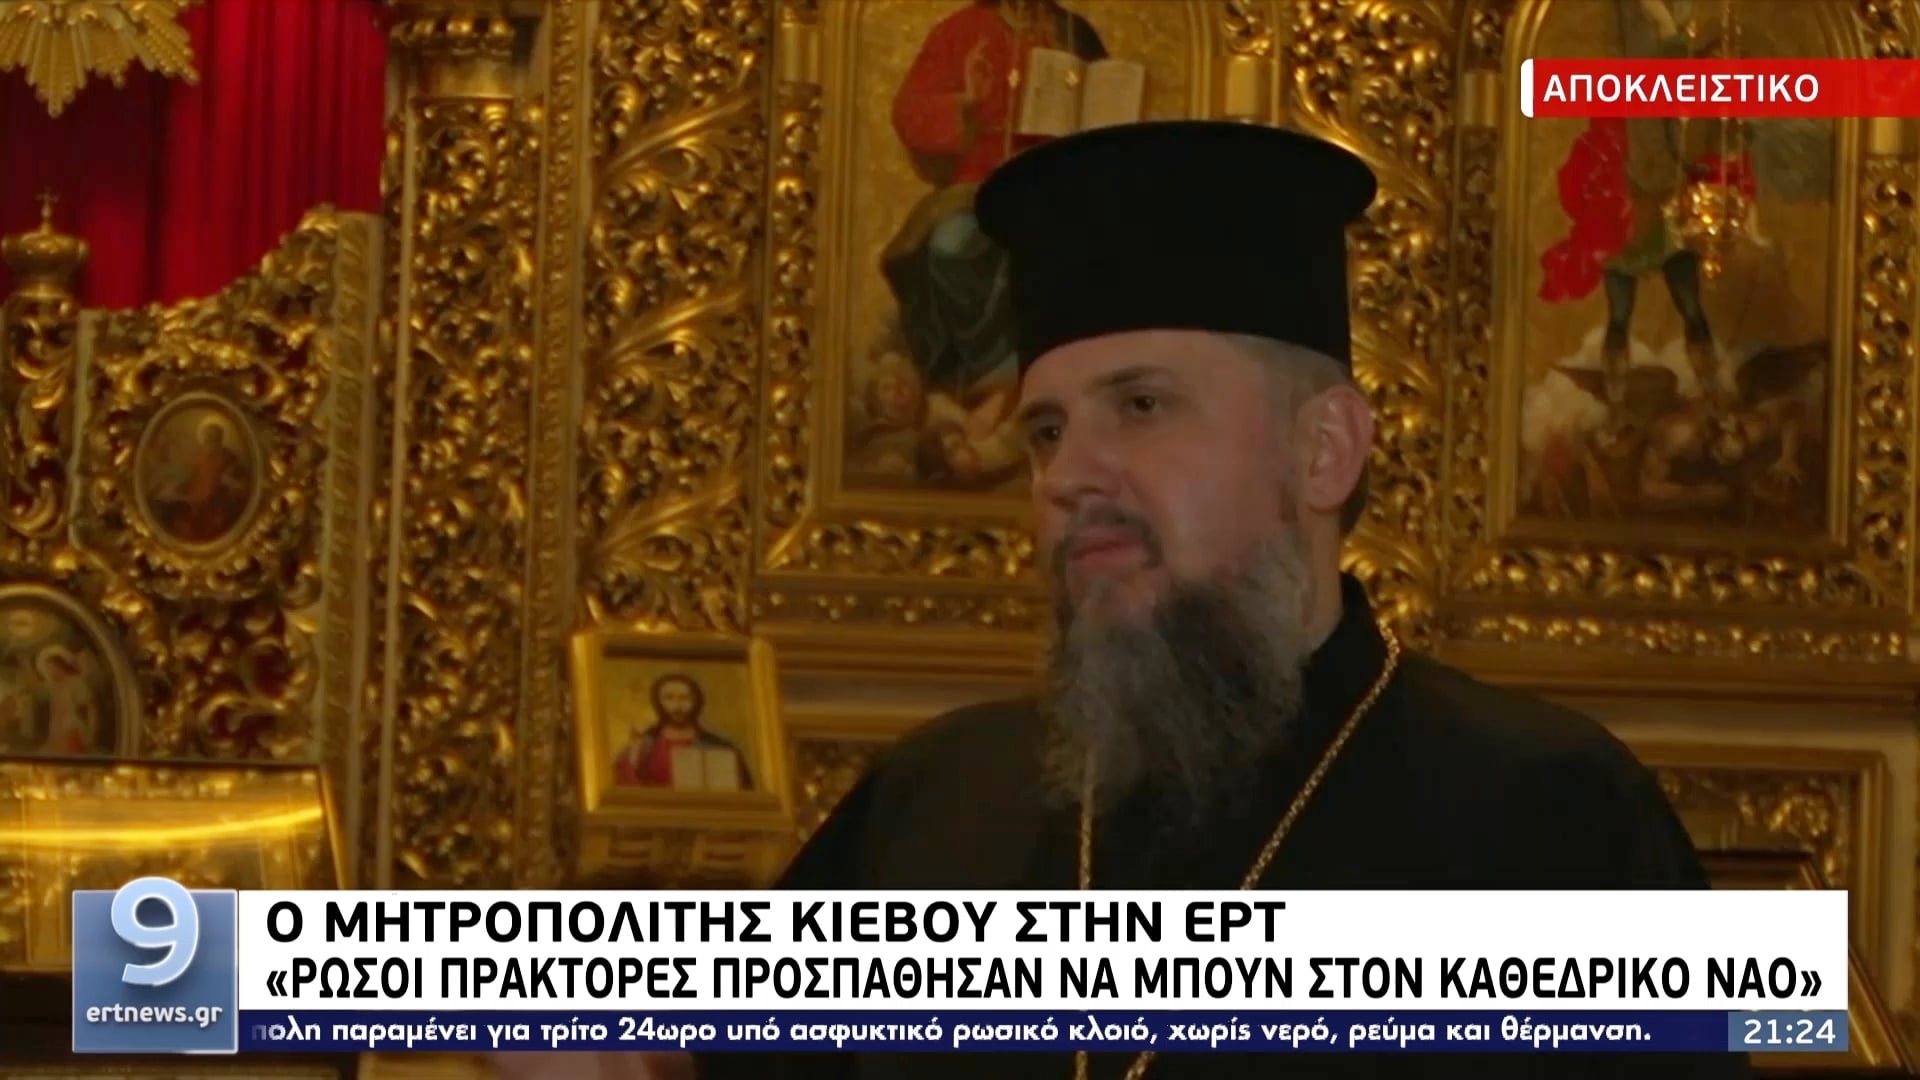 Ο Κιέβου Επιφάνιος σε ΕΡΤ: “Ρώσοι πράκτορες προσπάθησαν να μπουν στον Καθεδρικό Ναό”